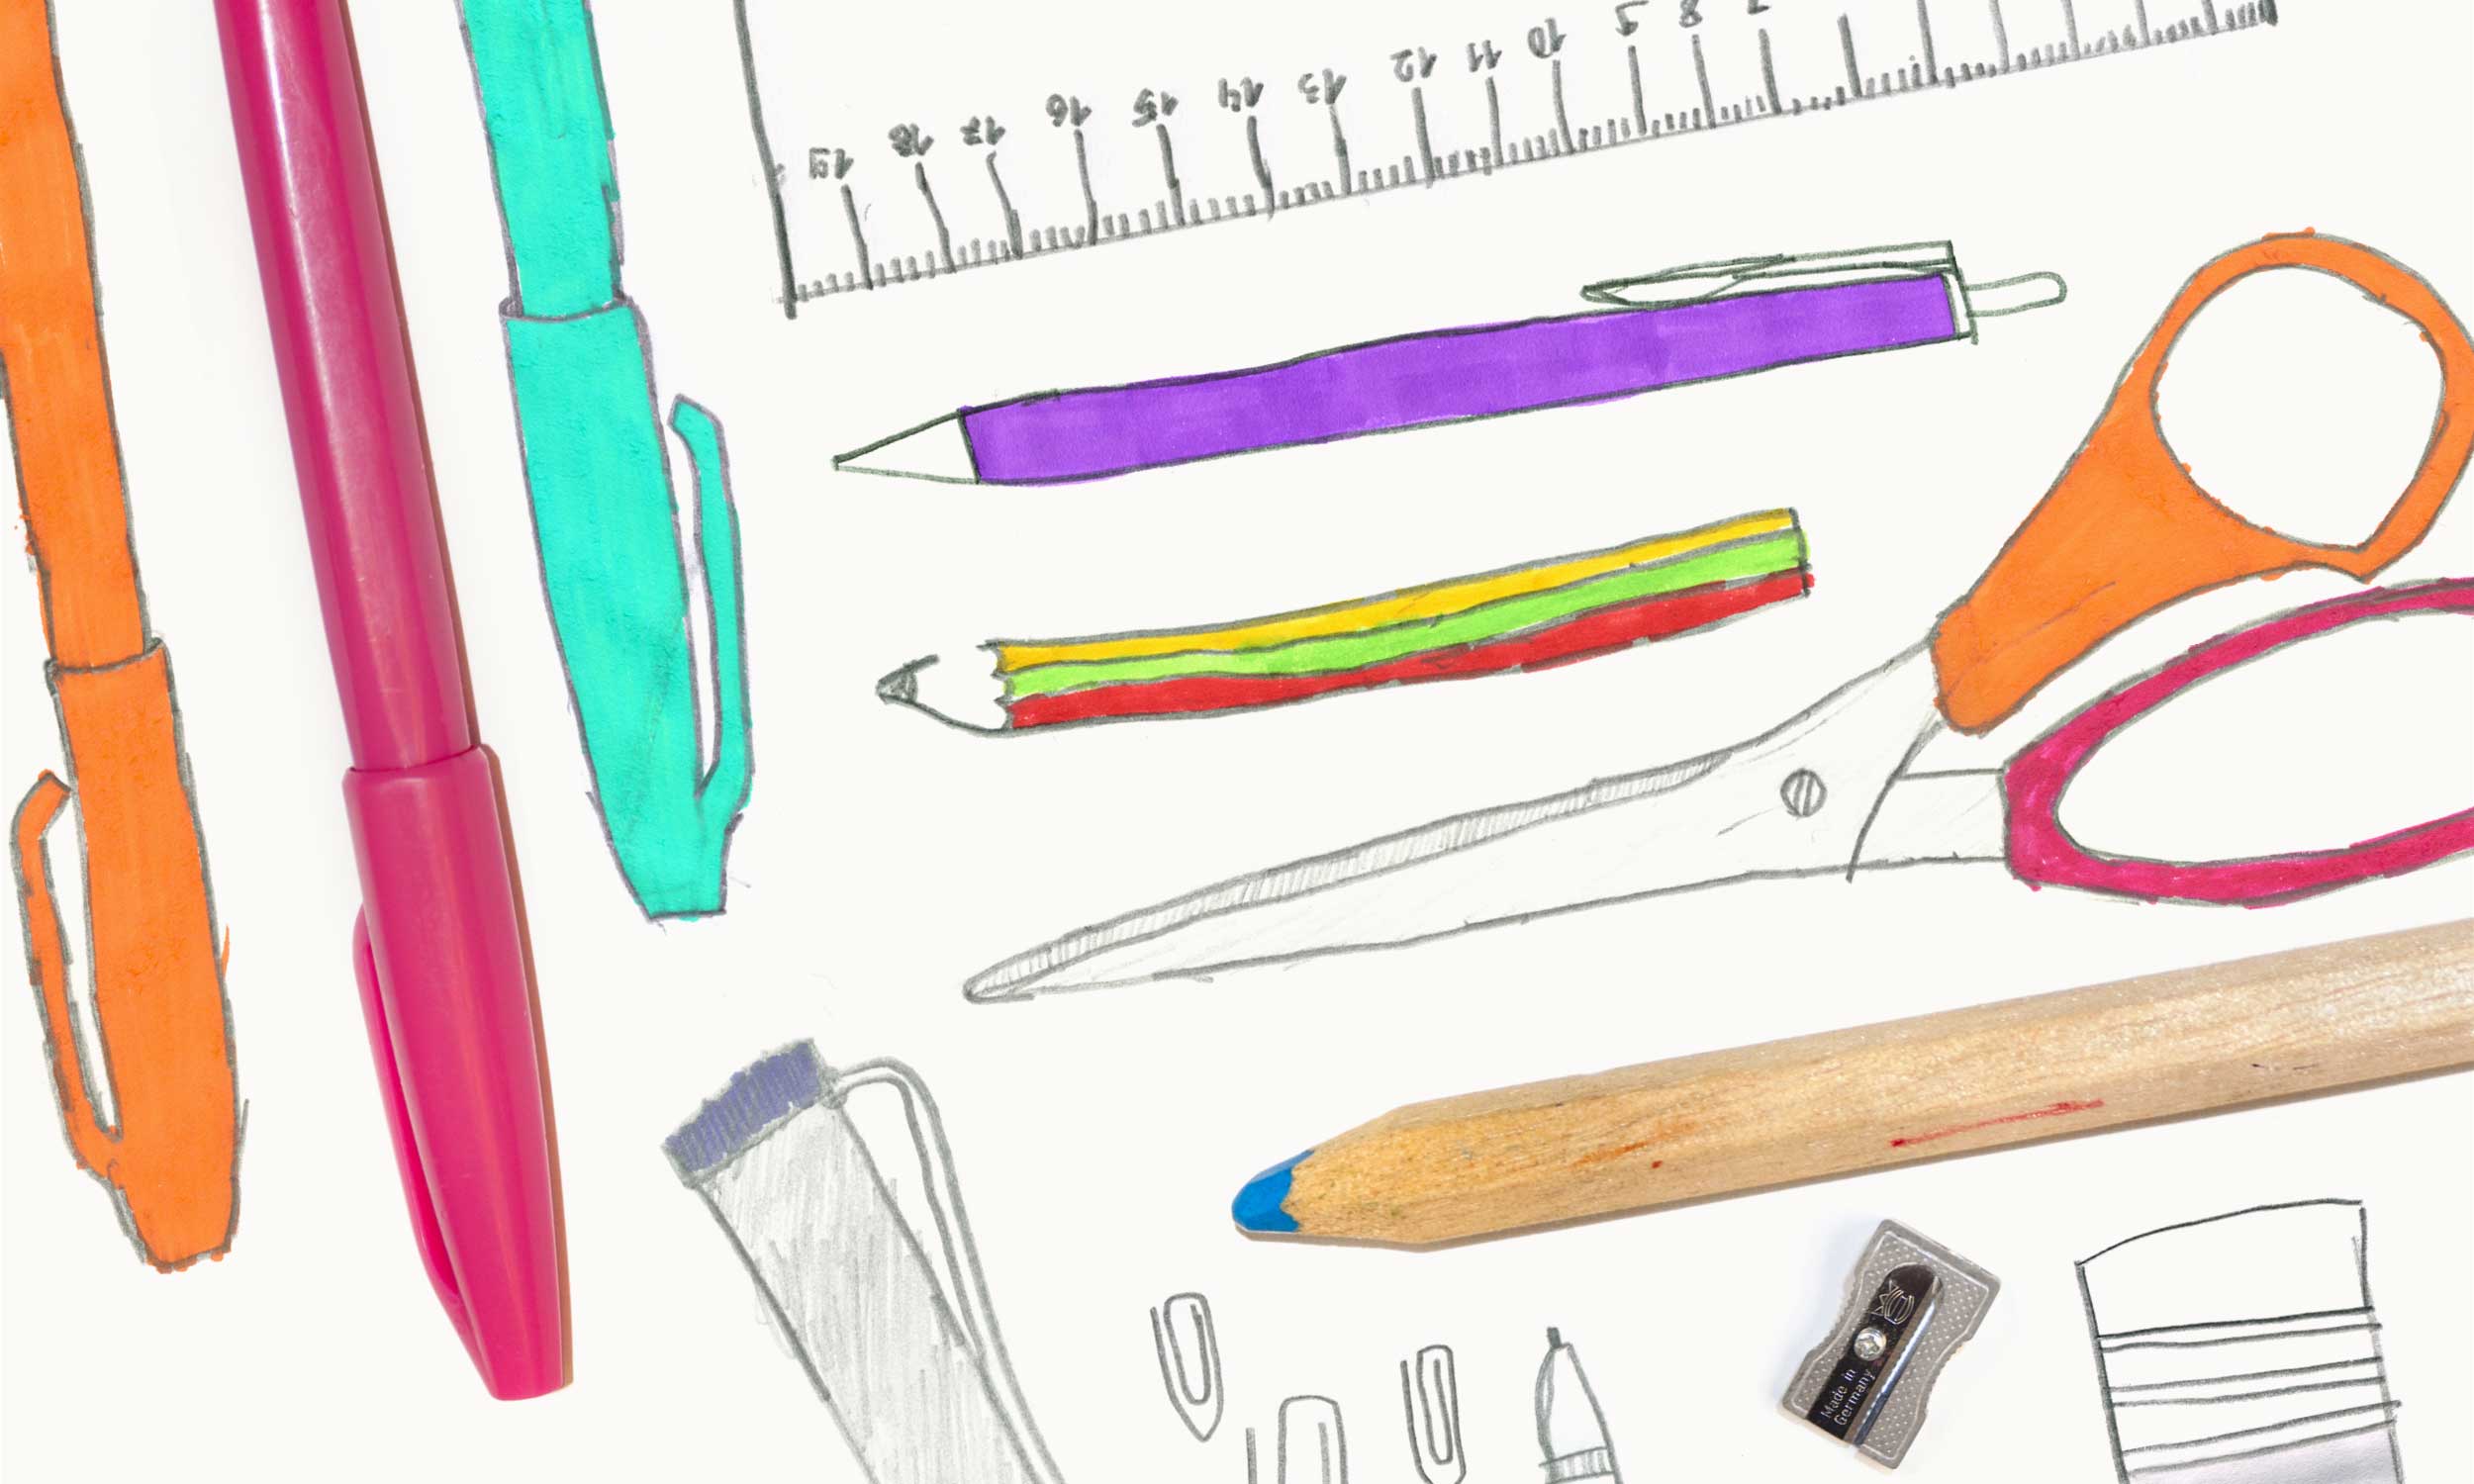 im Hintergrund eine detaillierte farbige Kinderzeichnung von verschiedenen Arbeitsmitteln, wie Stiften, Schere, Lineal; darauf ein dicker hölzerner Buntstift